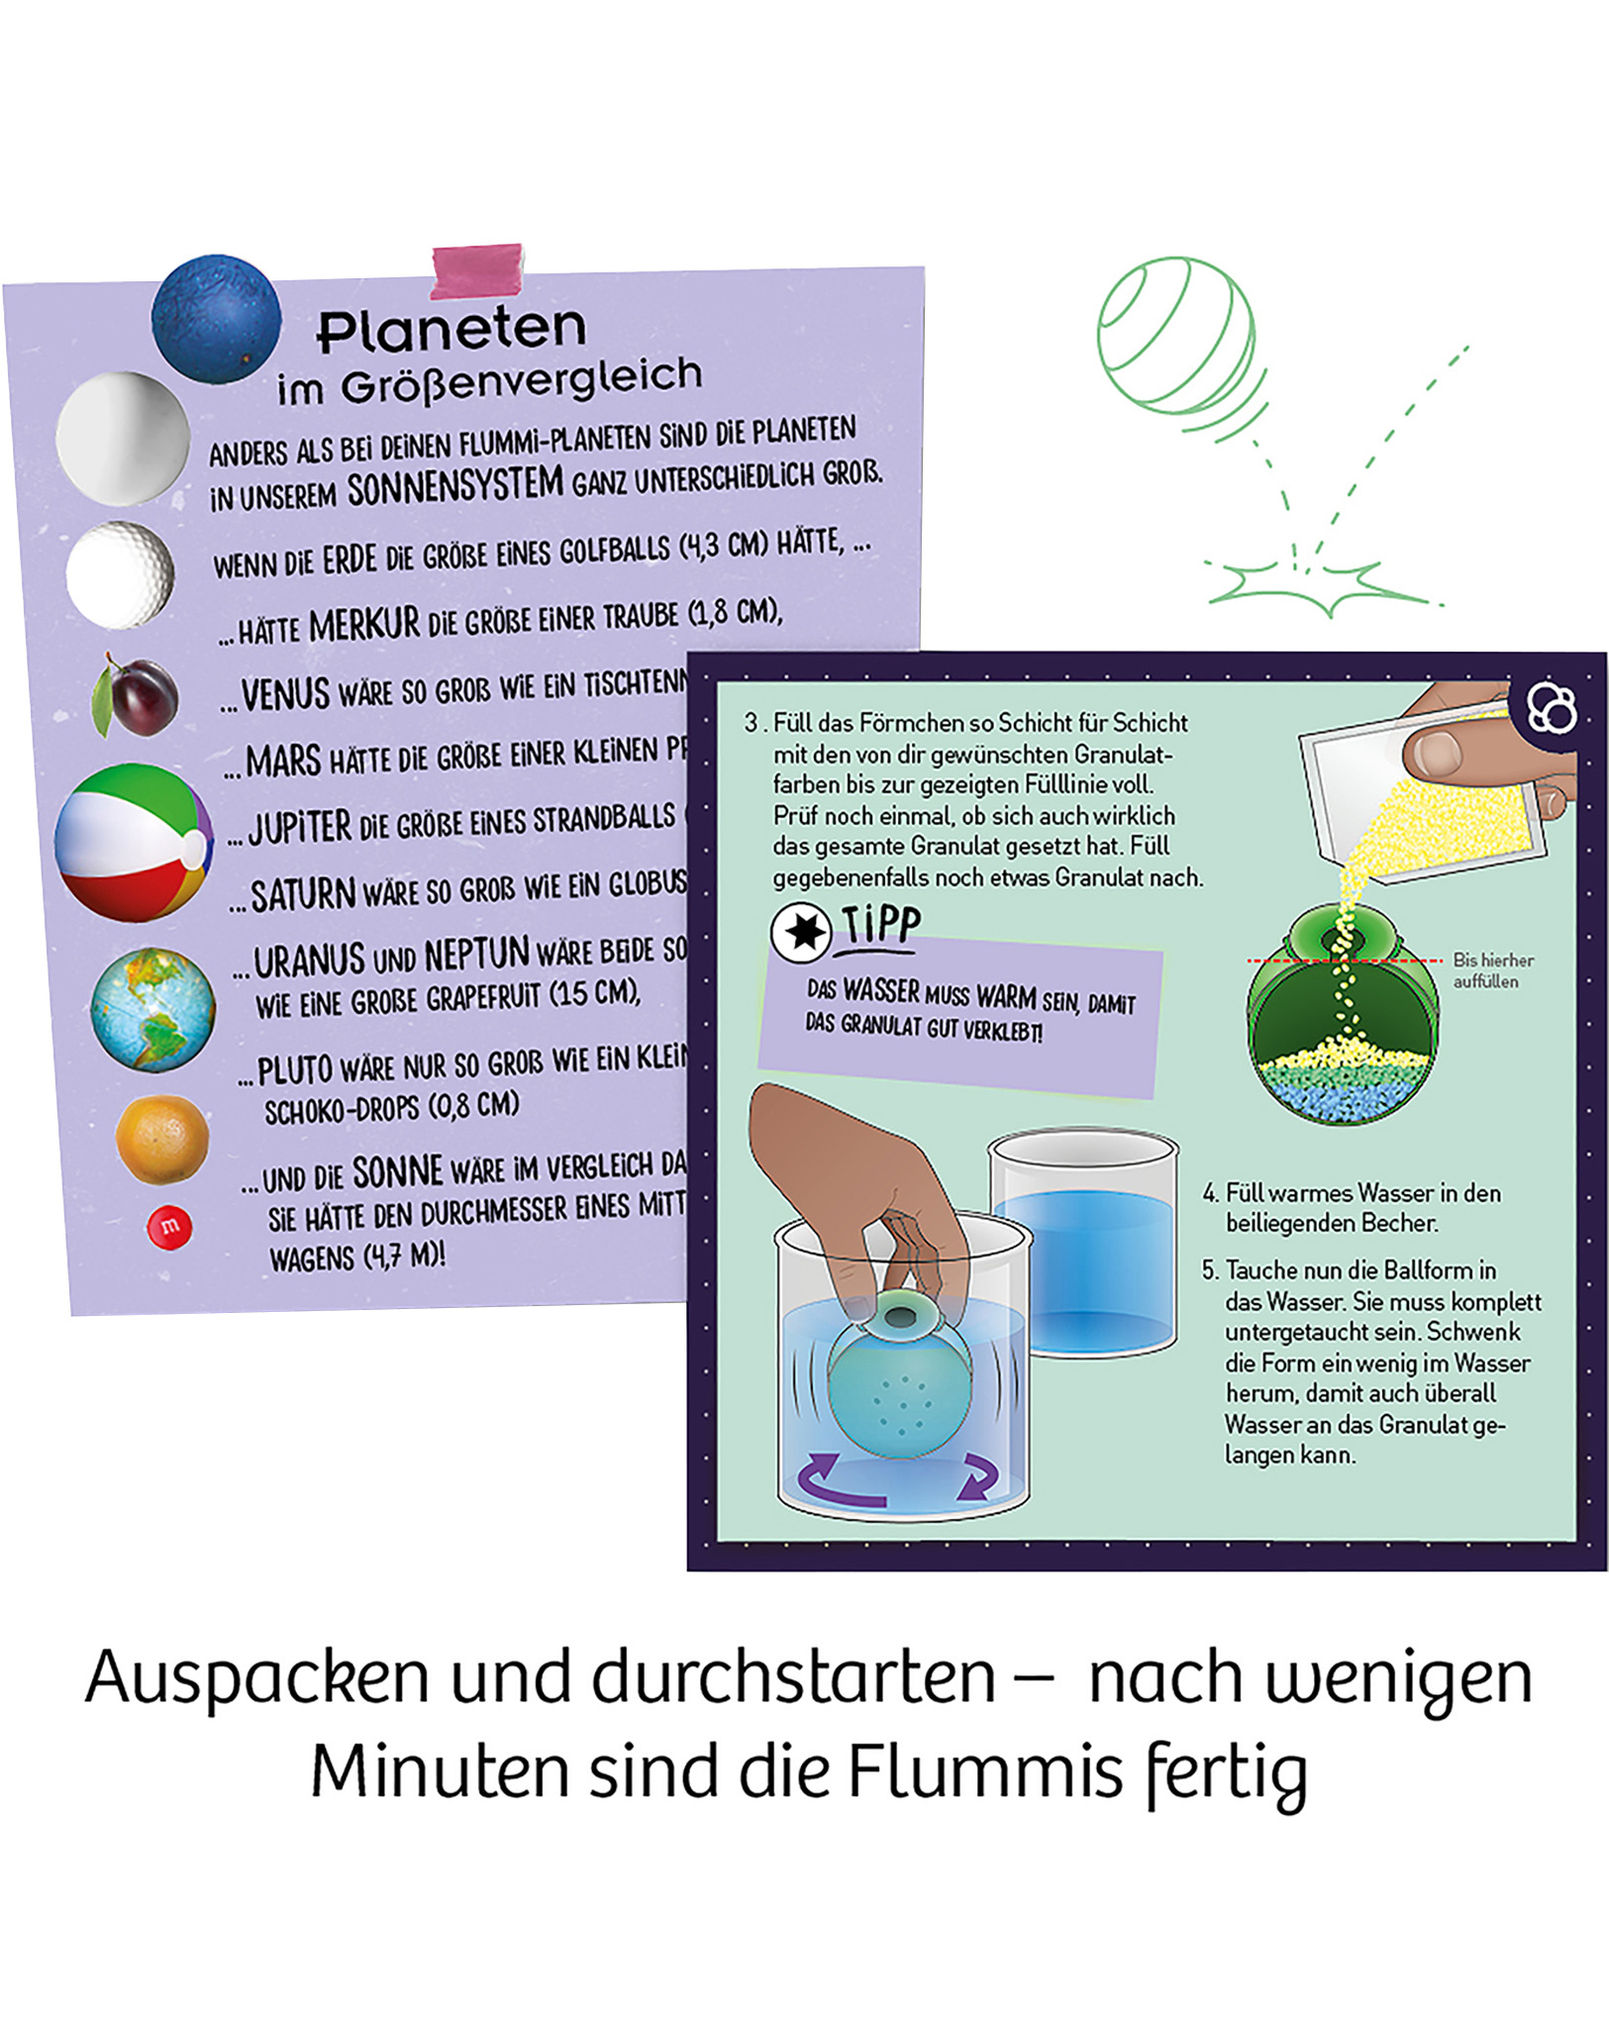 Wasser fließt ohne Pumpe - DO IT YOURSELF Anleitung/DIY - physikalische  Kraft - Lifehacks in deutsch 